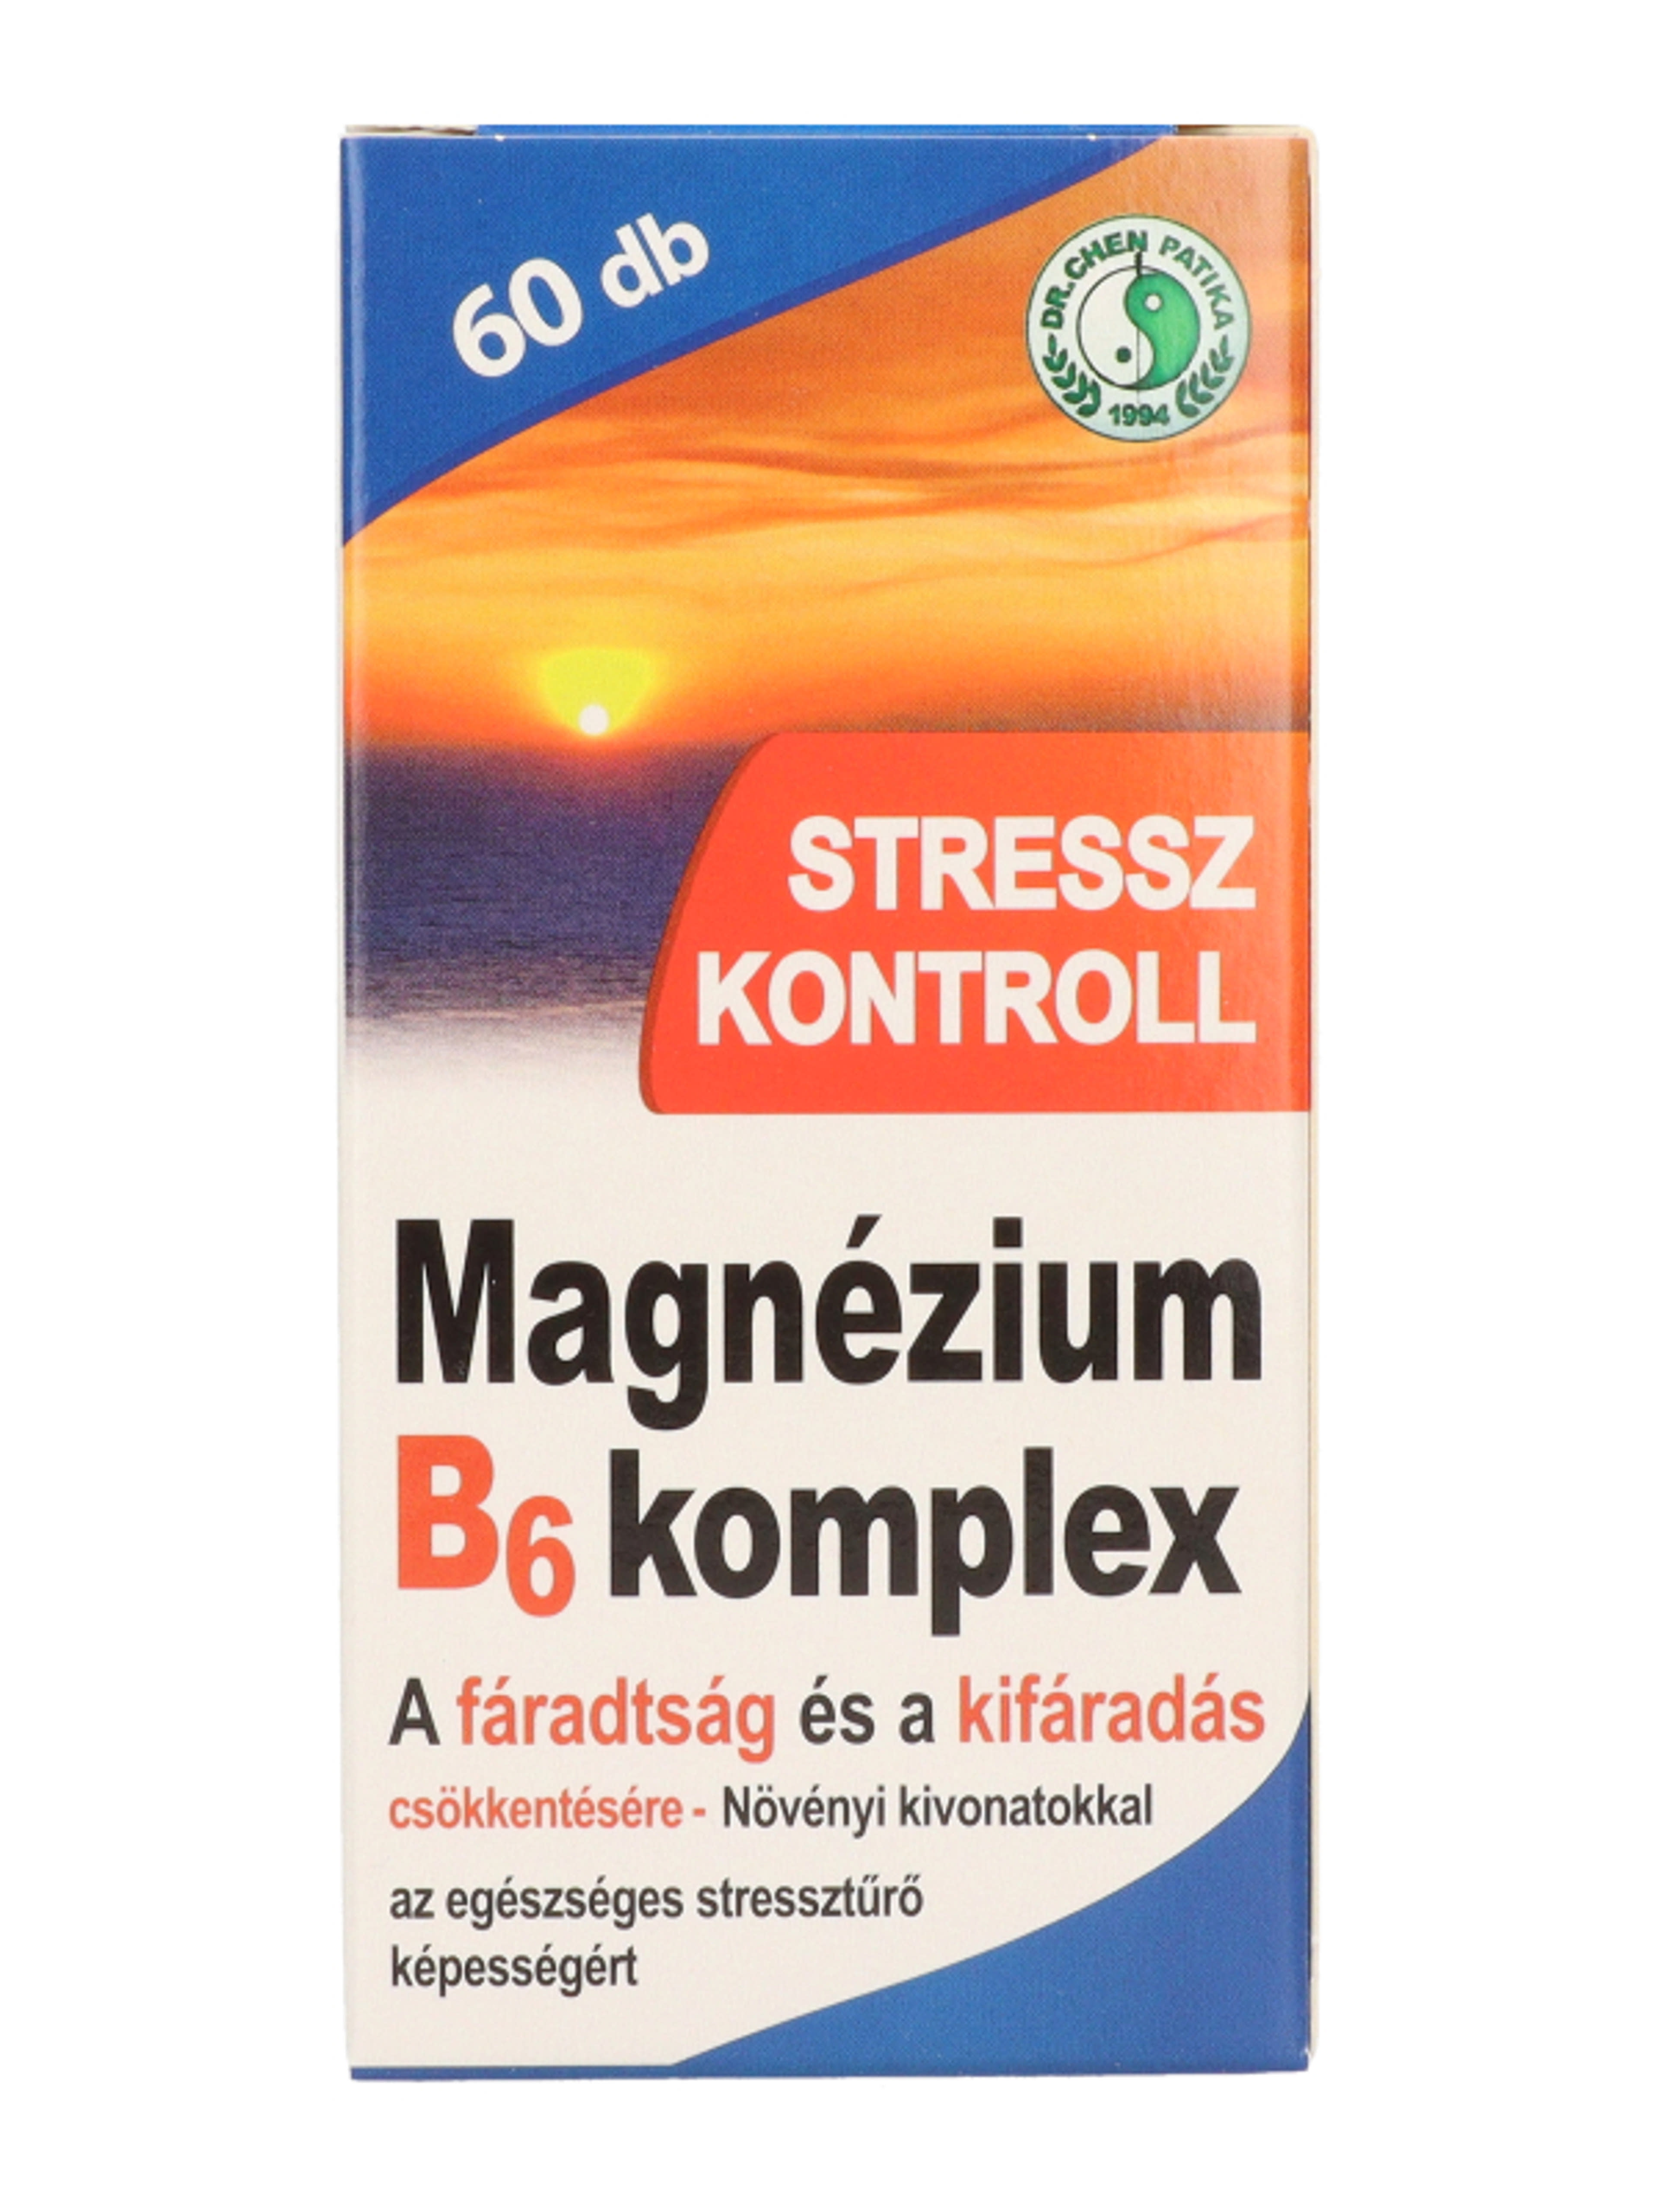 Dr.Chen Patika magnesium B6 komplex stressz tabletta - 60 db-2